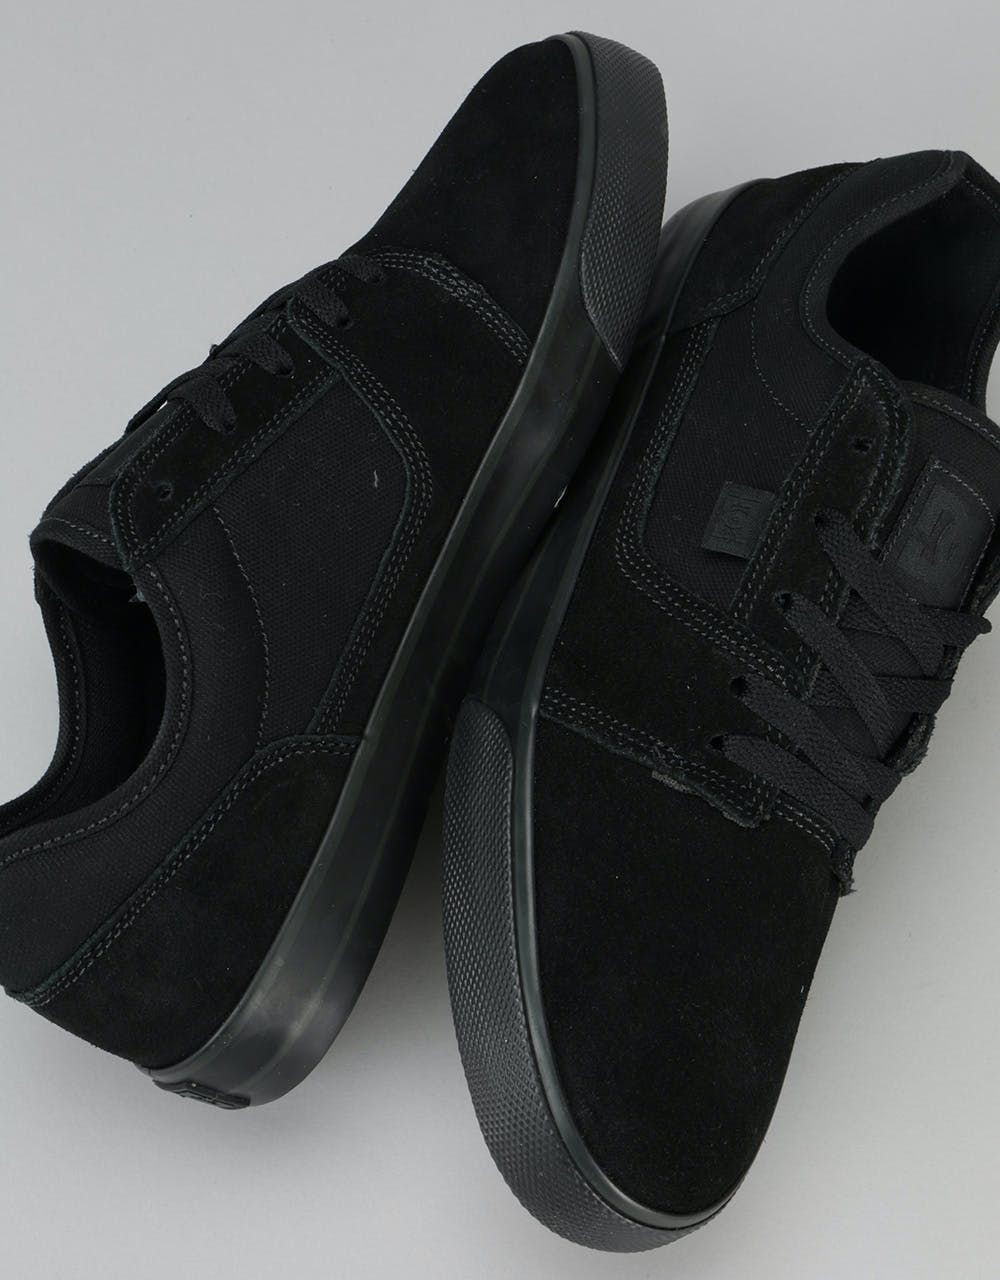 DC Tonik Skate Shoes - Black/Black